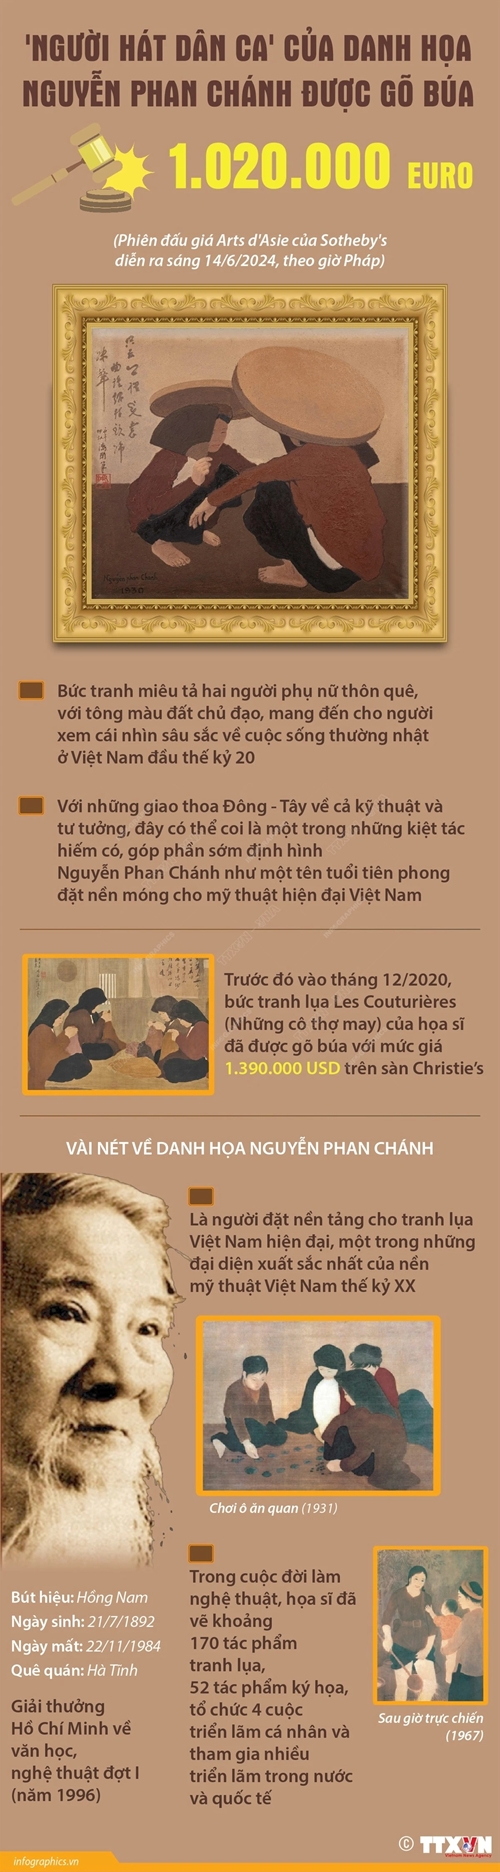 Người hát dân ca của họa sỹ Nguyễn Phan Chánh có giá bán hơn 1 triệu euro